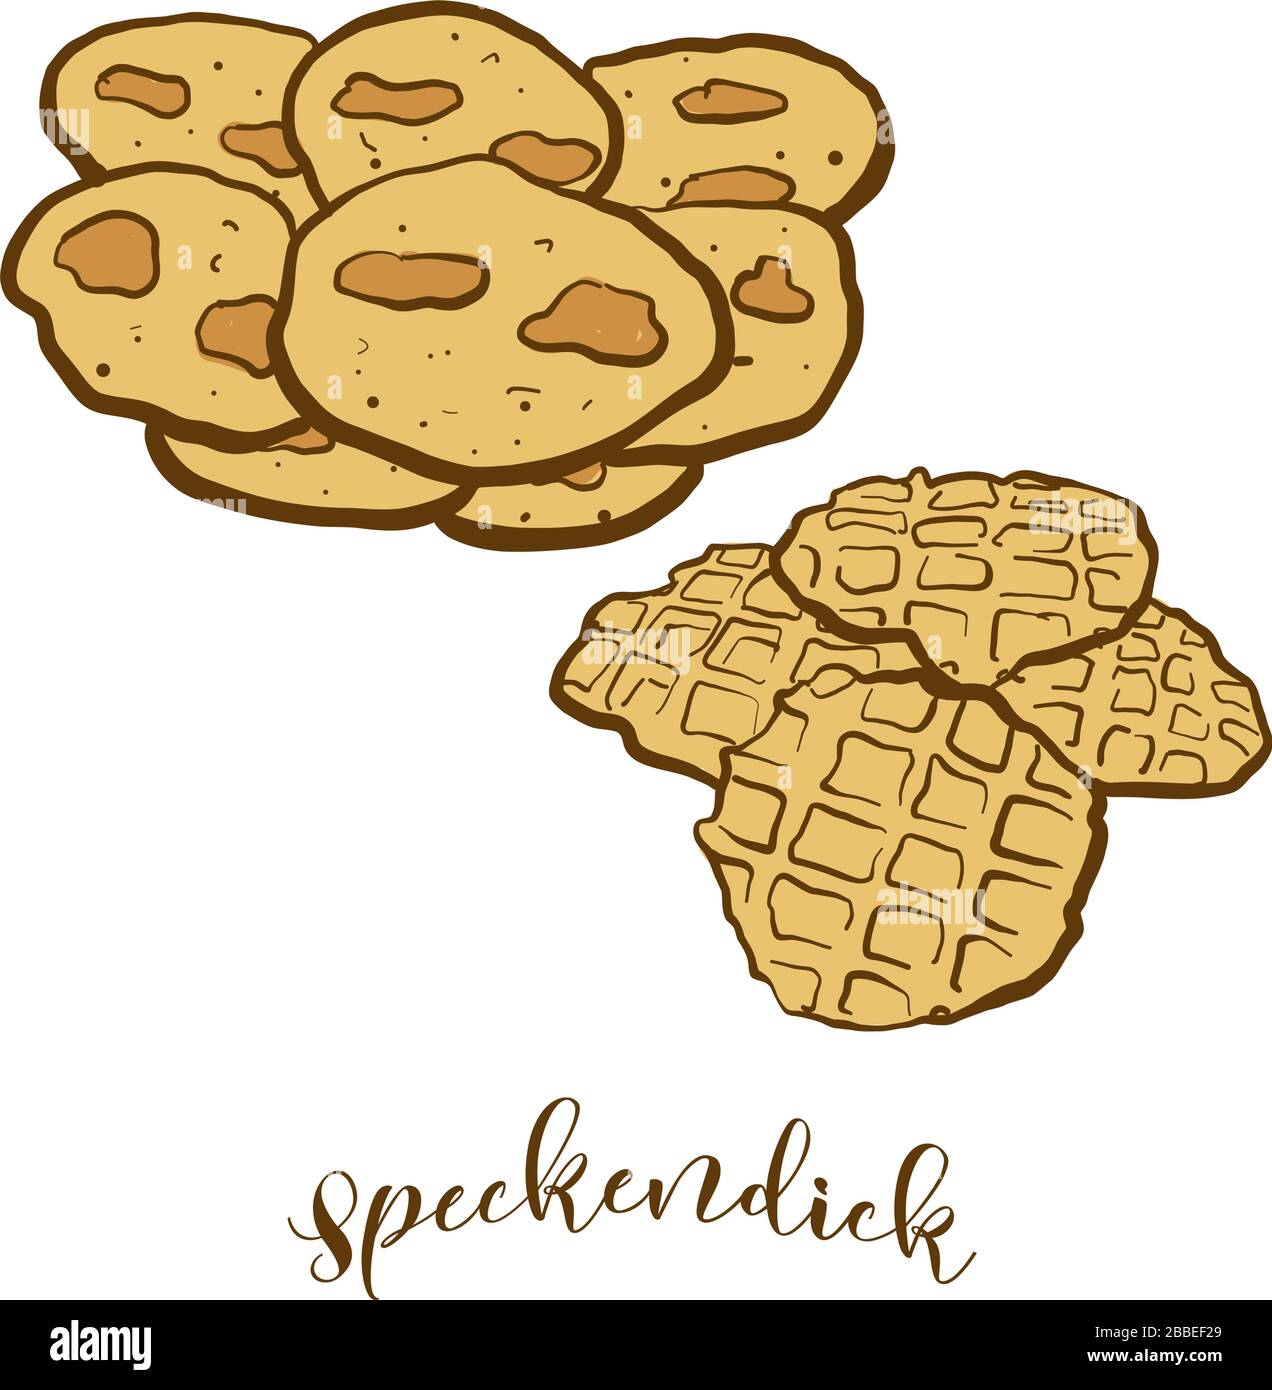 Farbige Zeichnung von Speckendick Brot. Vektorgrafiken von Pfannkuchen-Lebensmitteln, die in Deutschland, Ostfriesland, meist bekannt sind. Bunte Brotskizzen. Stock Vektor